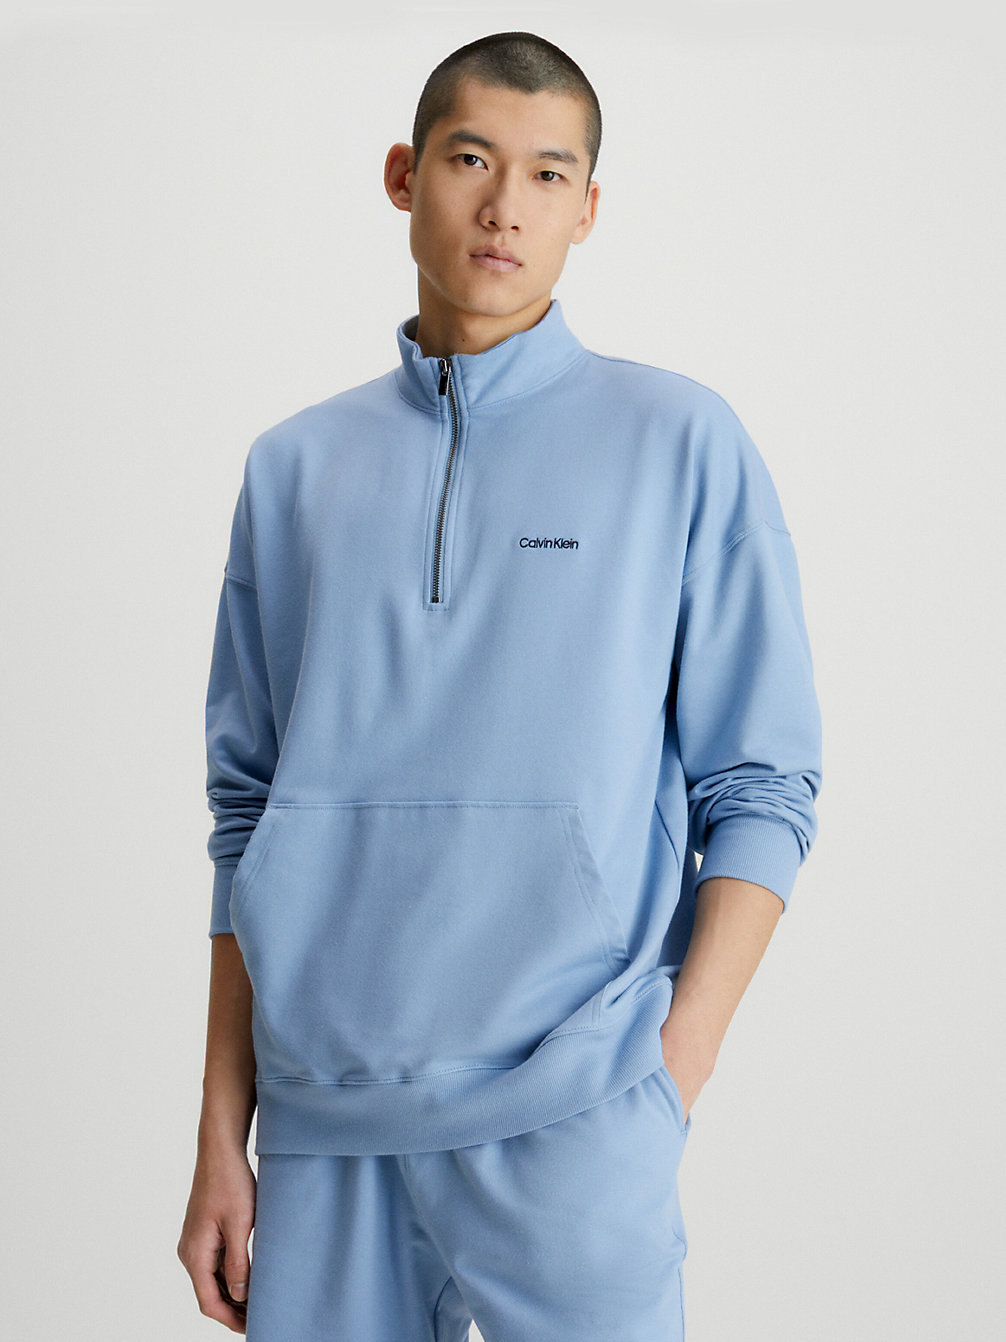 ICELAND BLUE Lounge-Sweatshirt - Modern Cotton undefined Herren Calvin Klein